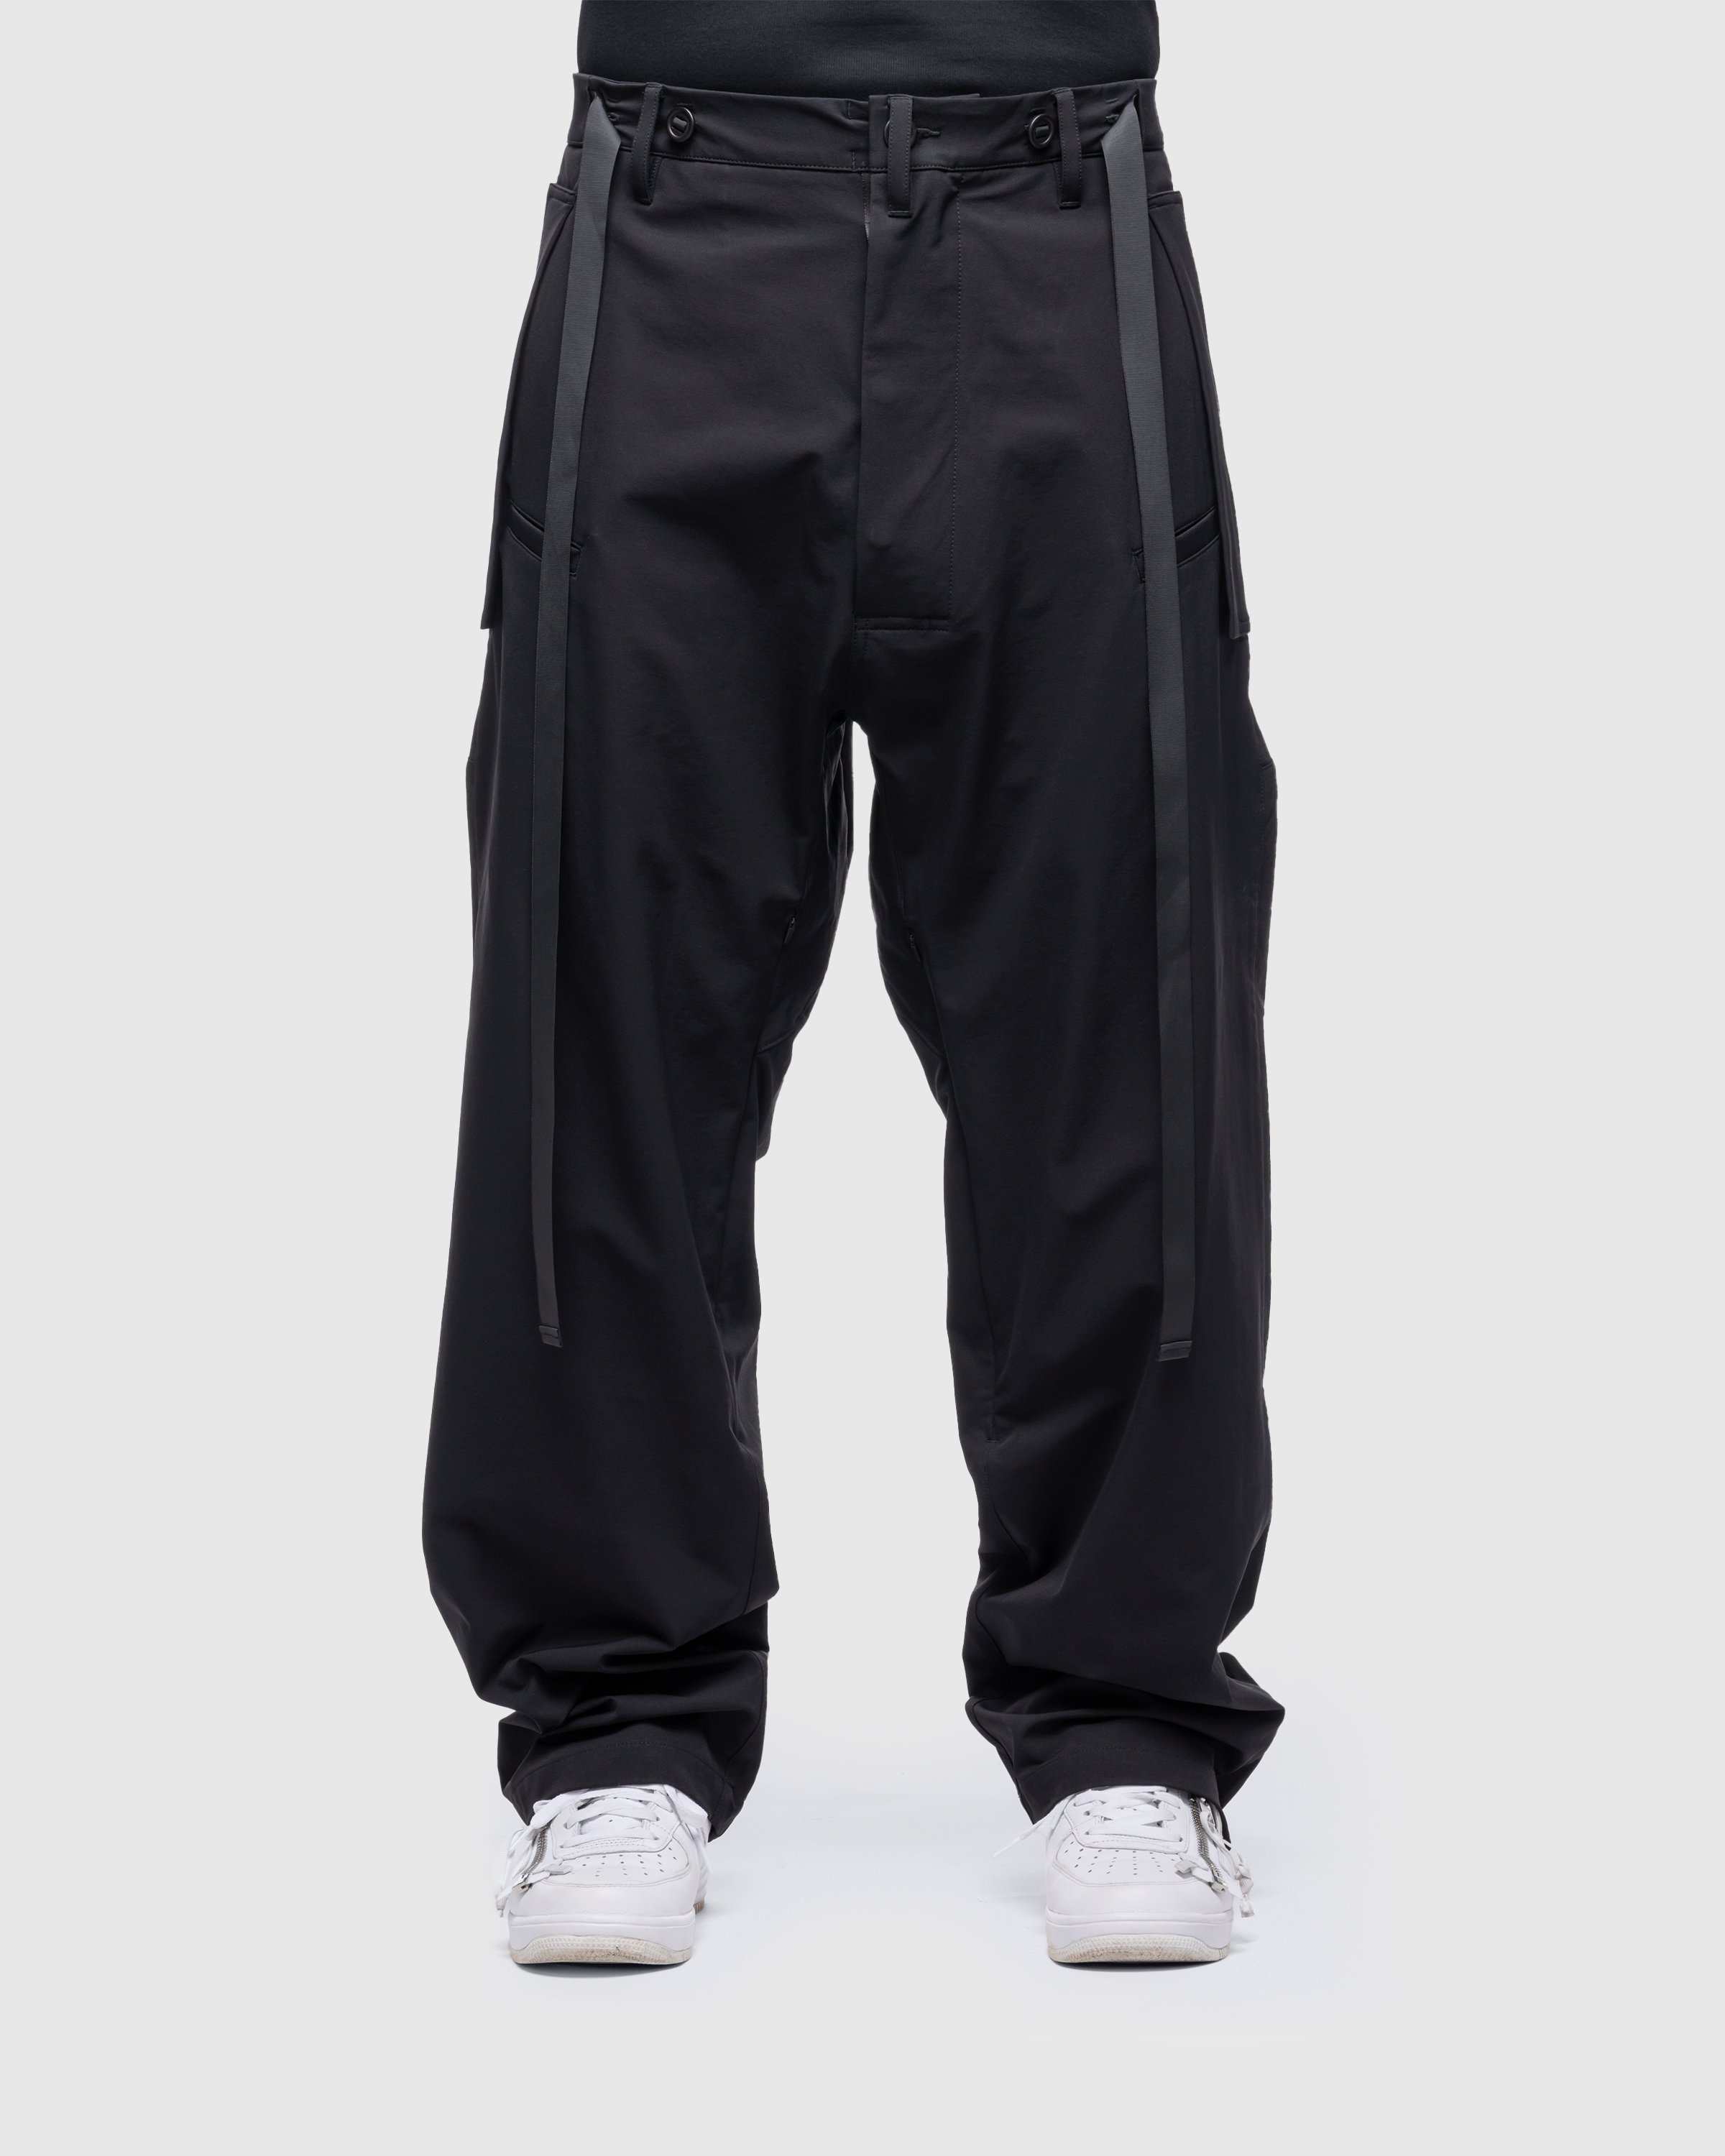 ACRONYM - P46-DS Schoeller Dryskin Vent Pants Black - Clothing - Black - Image 2